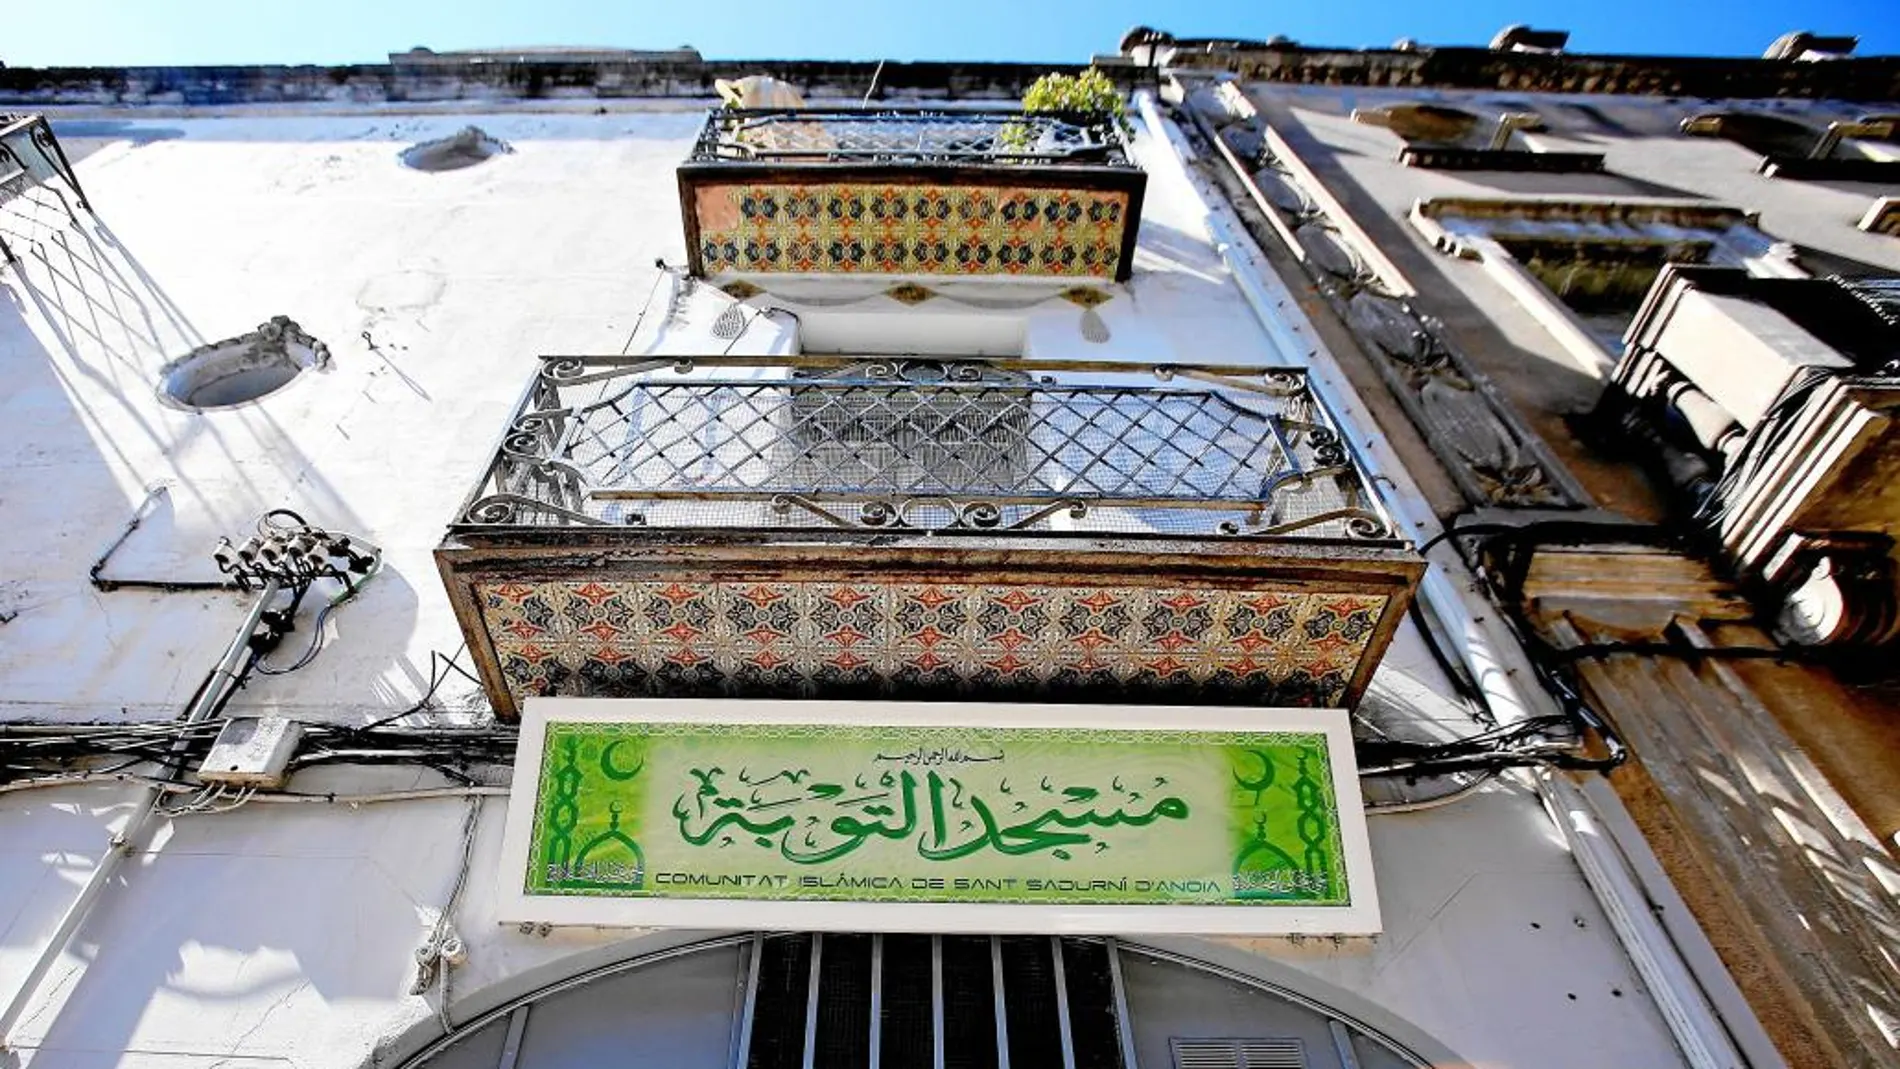 Uno de los balcones del templo islámico, ubicado en la calle Diputación